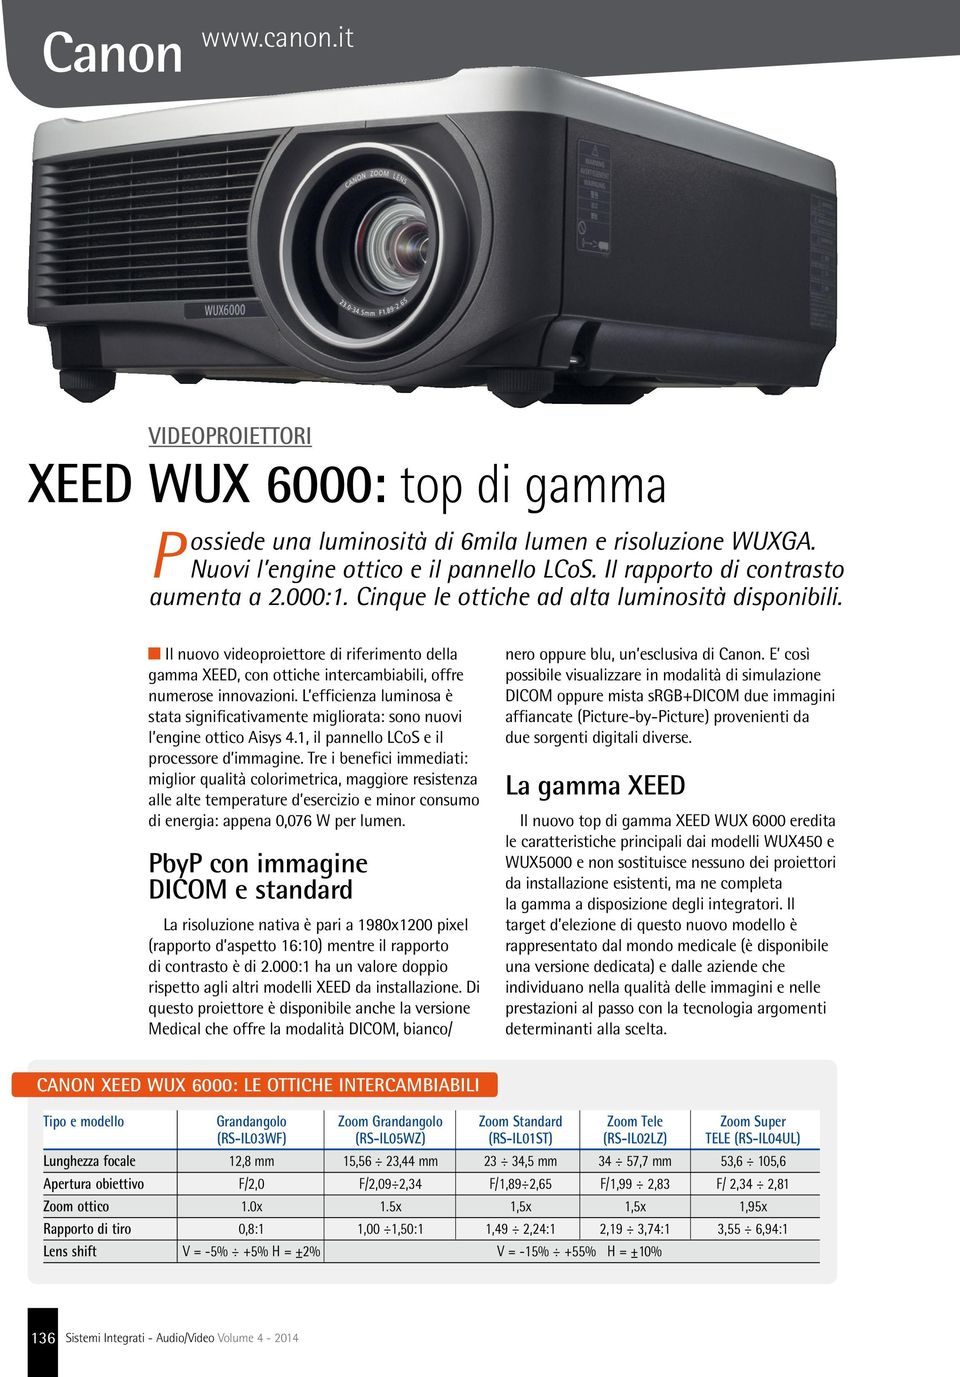 Il nuovo videoproiettore di riferimento della gamma XEED, con ottiche intercambiabili, offre numerose innovazioni.